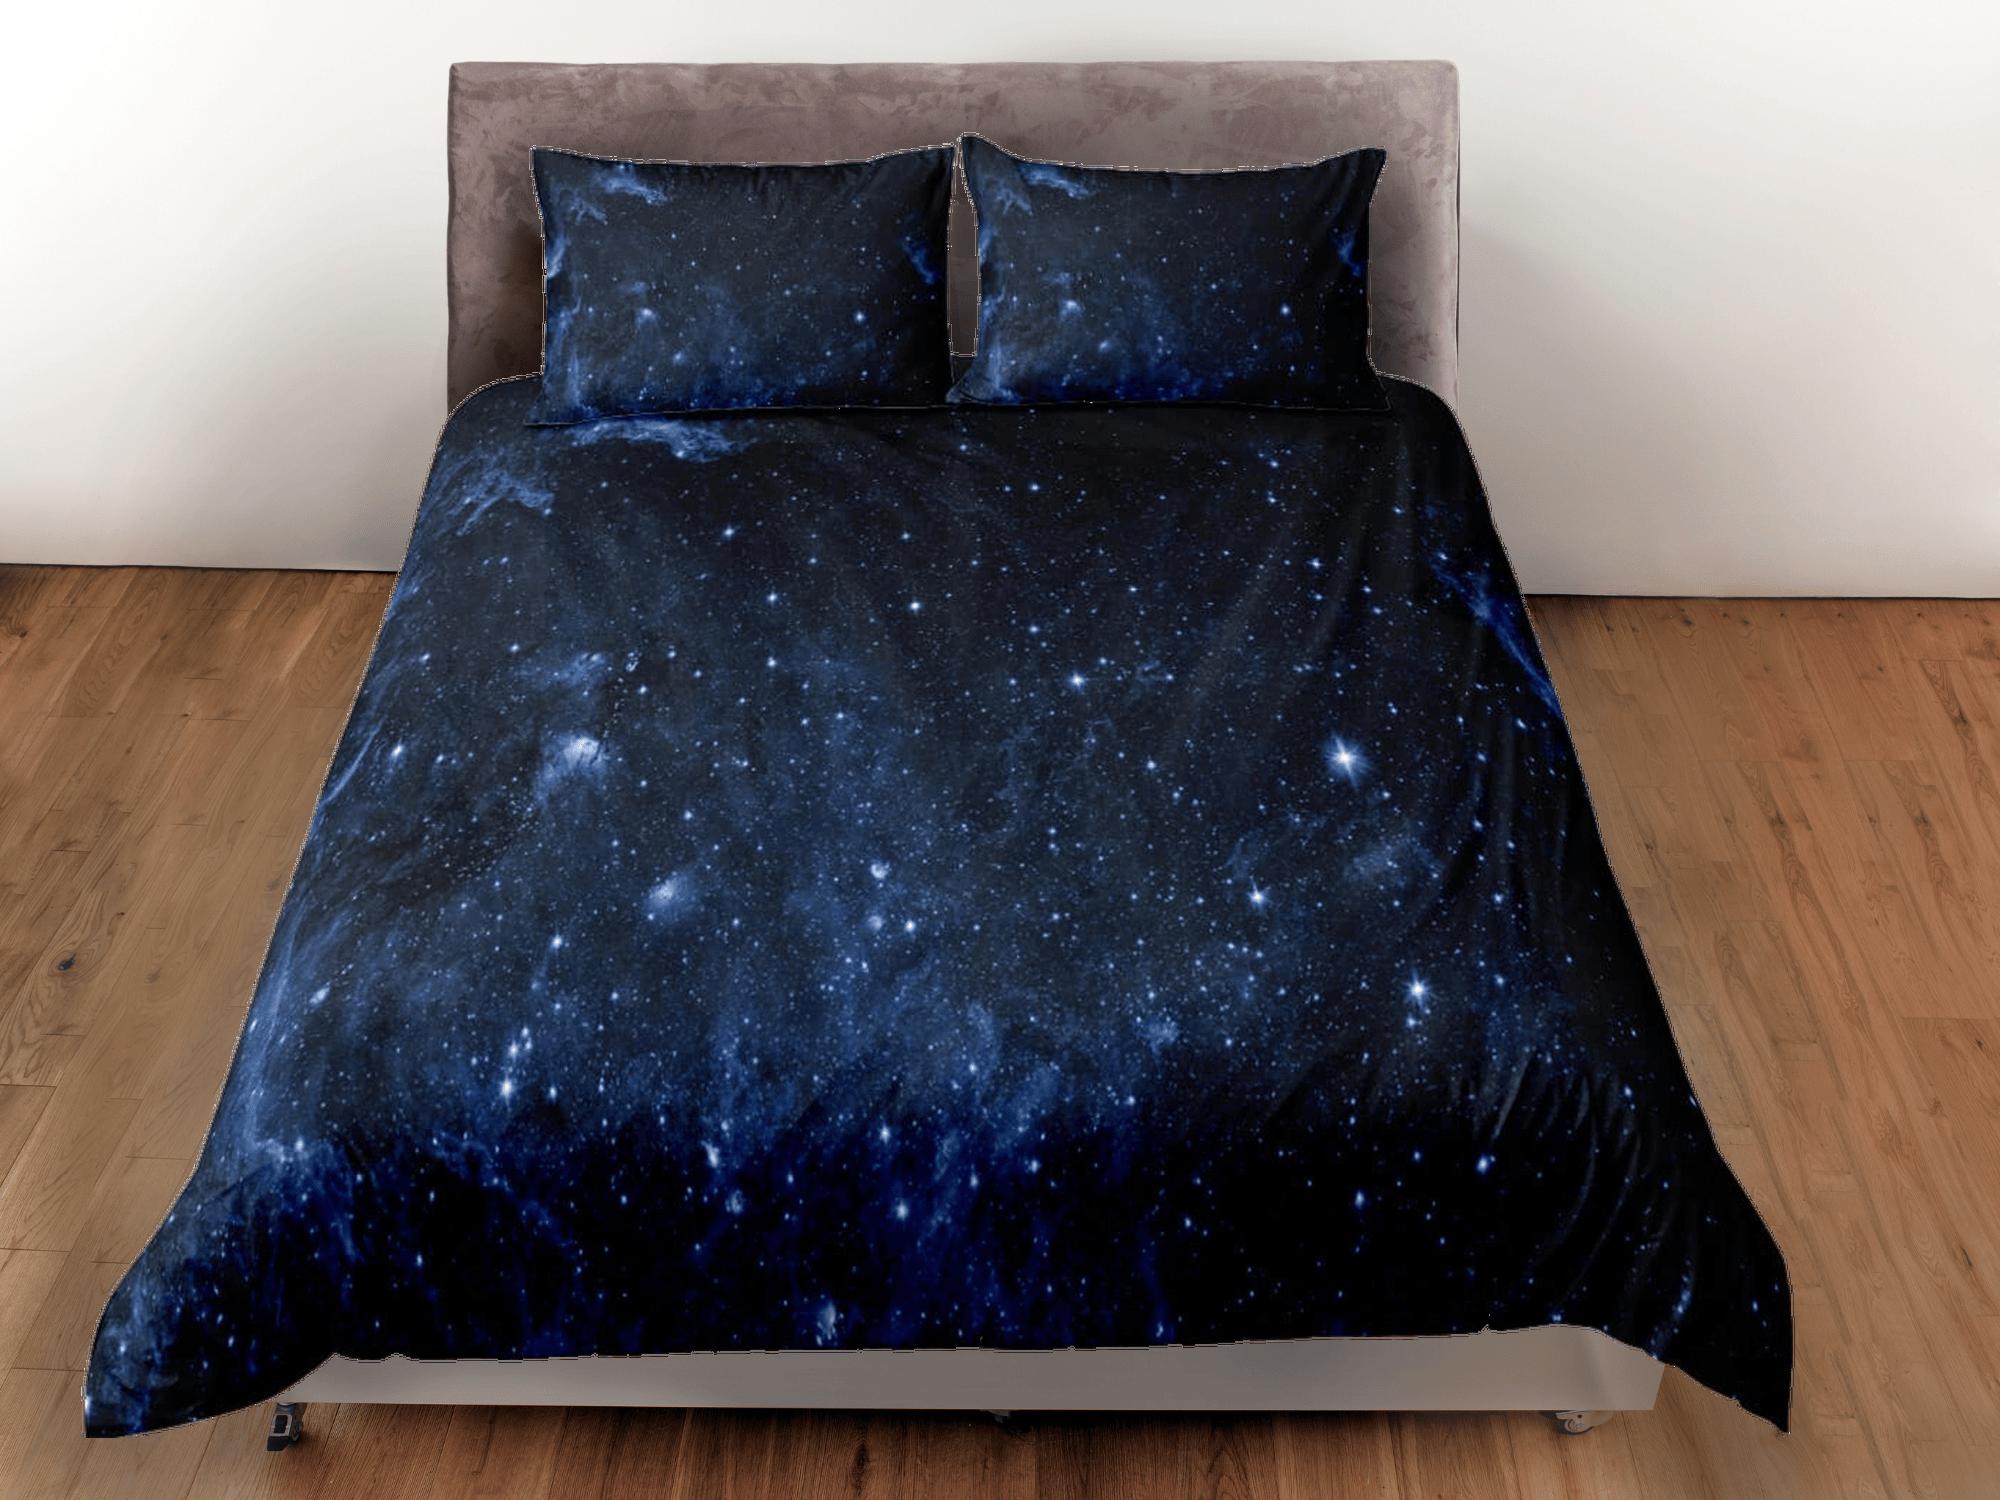 daintyduvet Galaxy dark blue bedding, 3D outer space bedding set full, cosmic duvet cover king, queen, dorm bedding, toddler bedding aesthetic duvet